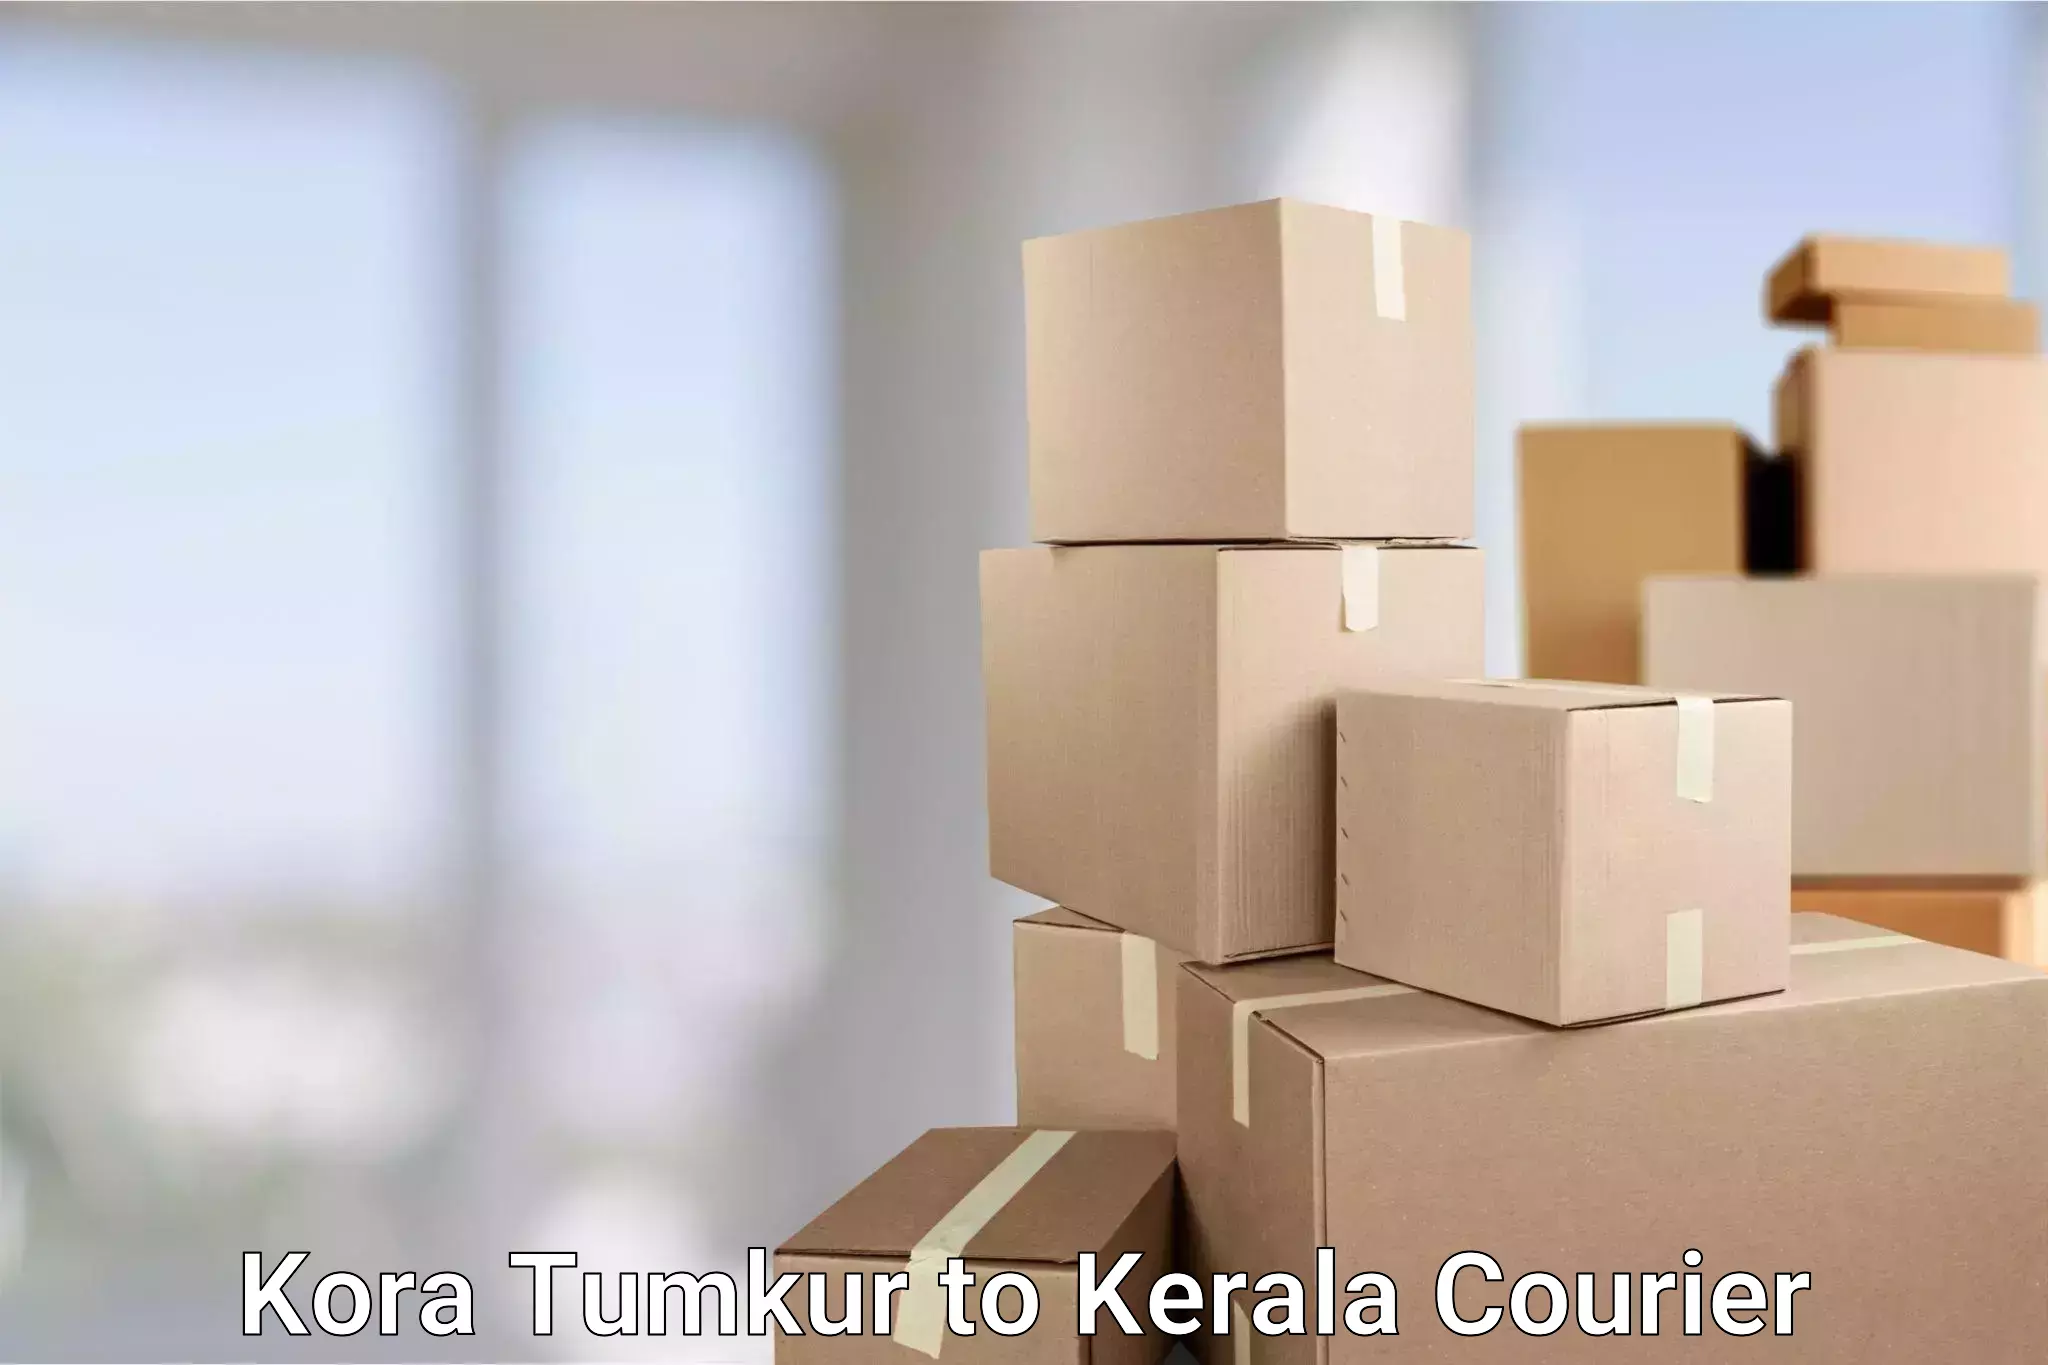 Online courier booking Kora Tumkur to Wayanad